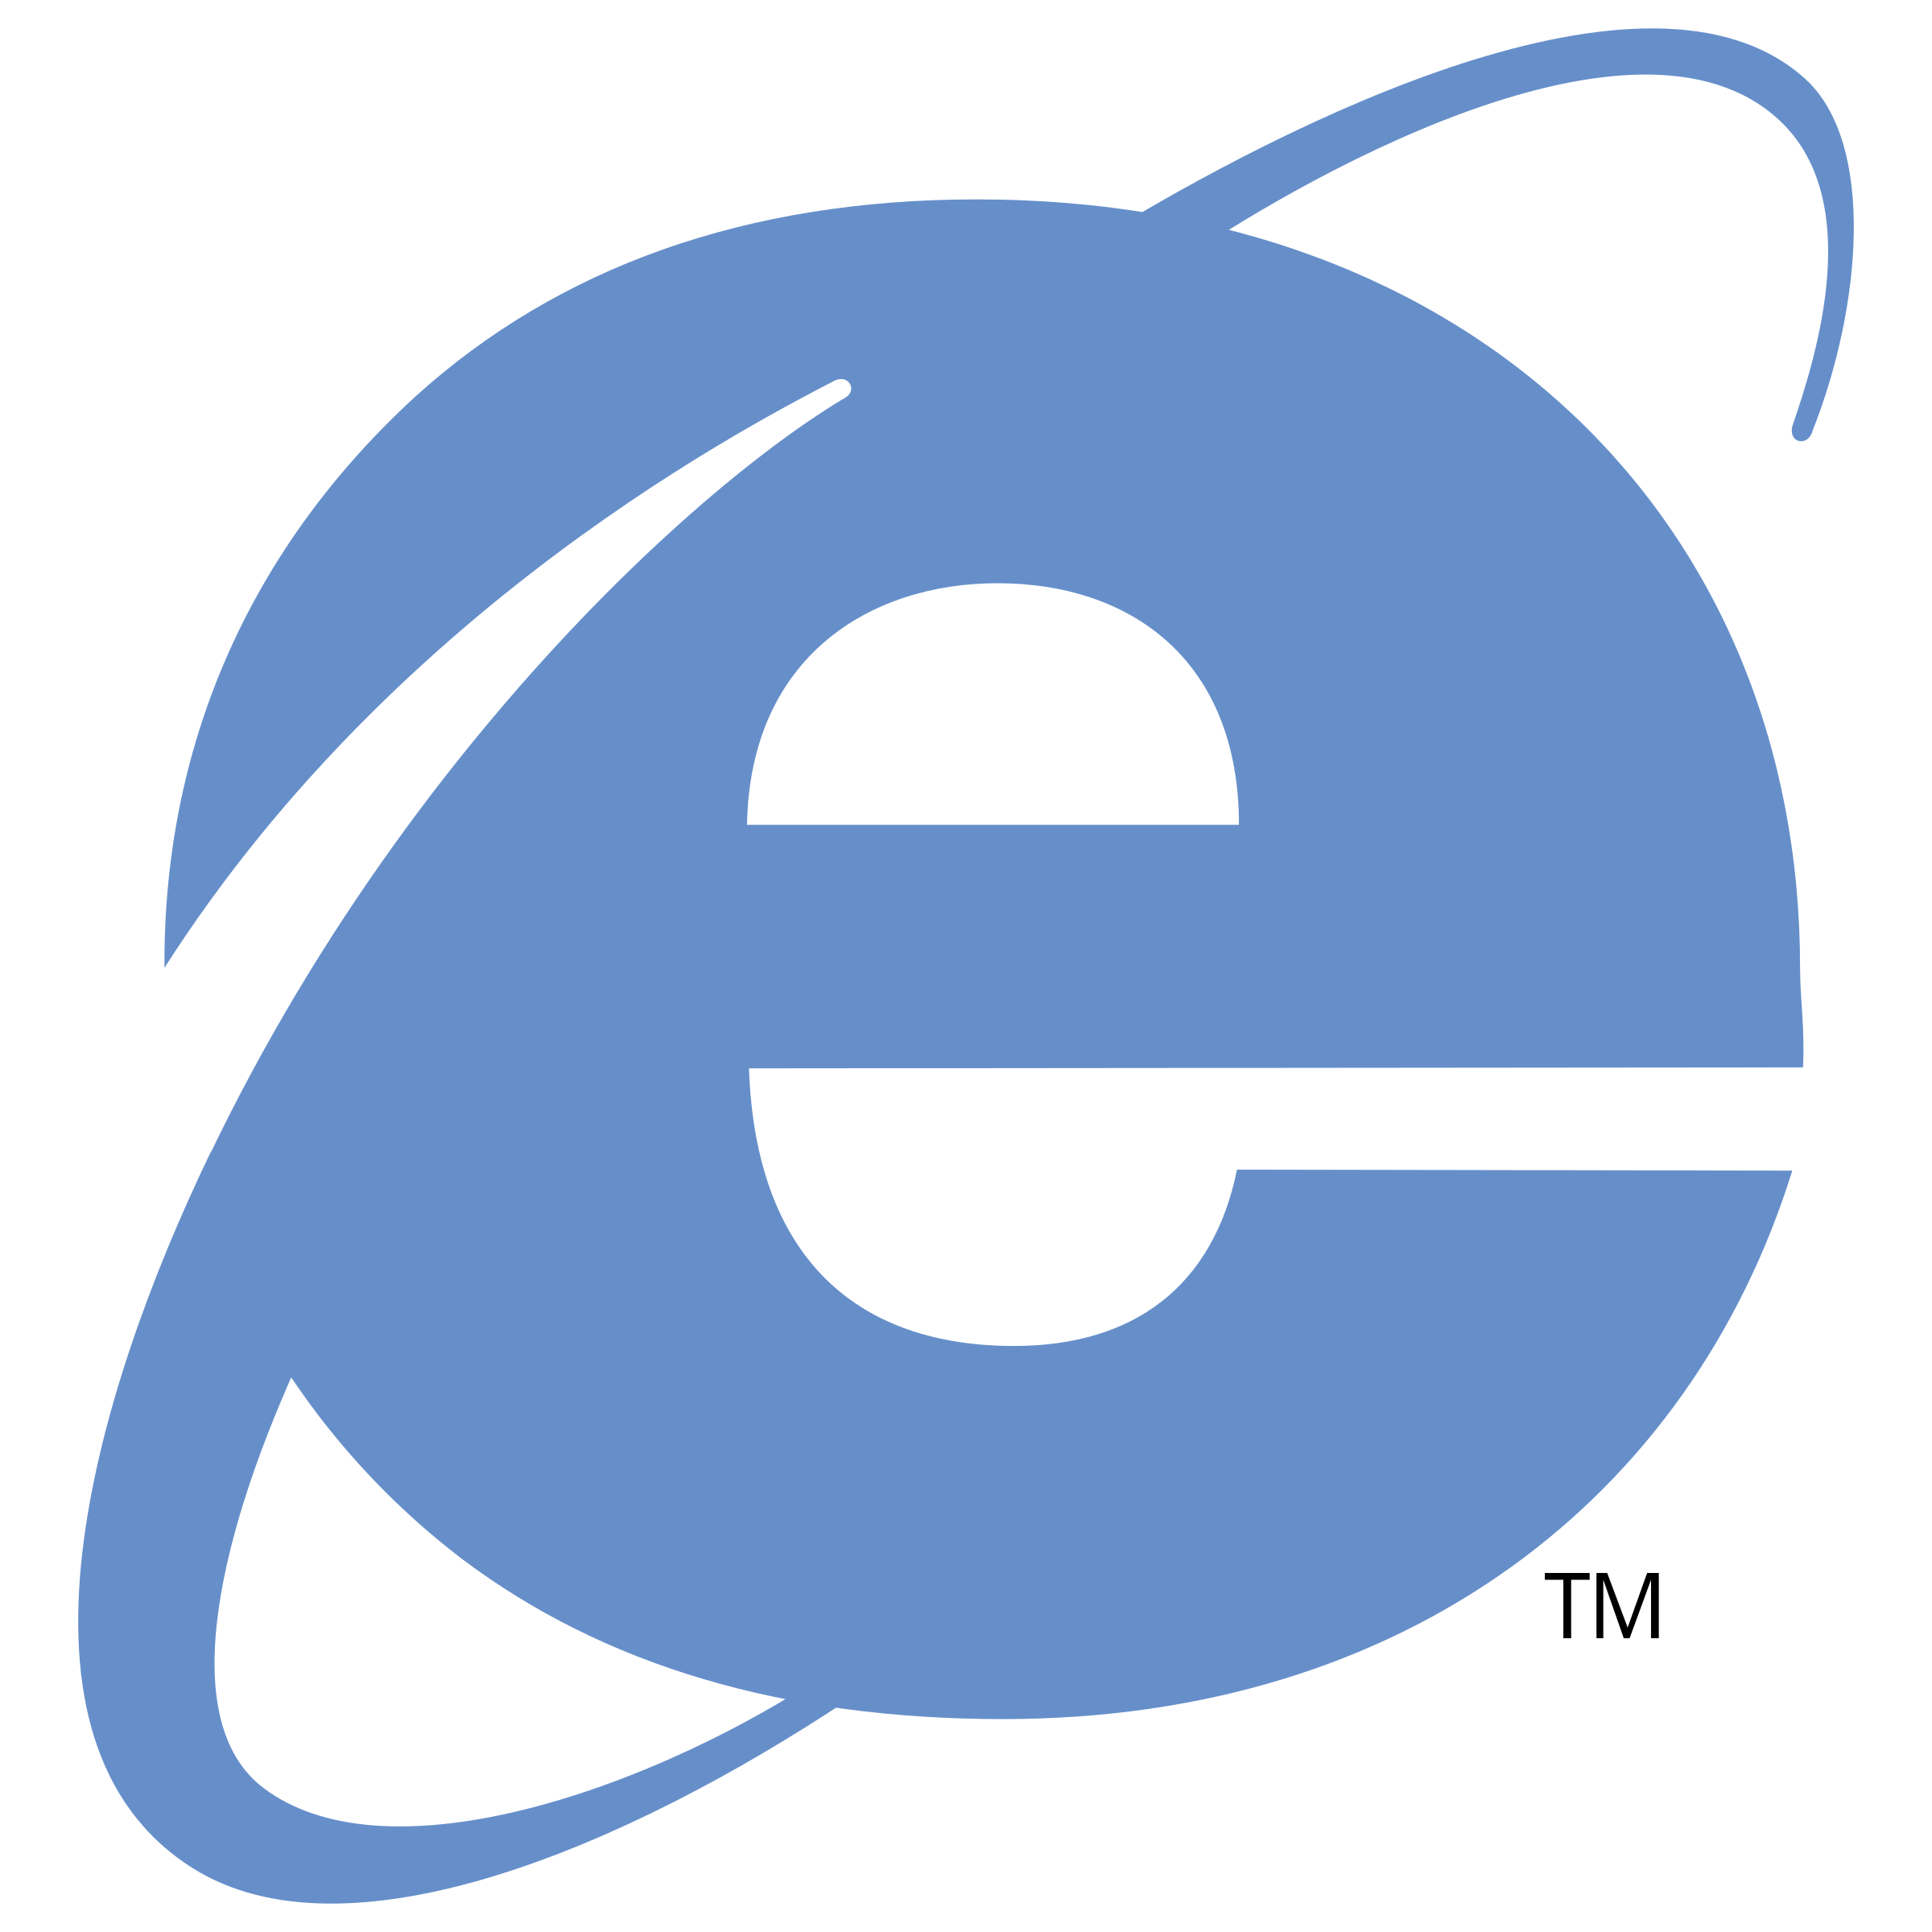 Internet Explorer PNG Image File